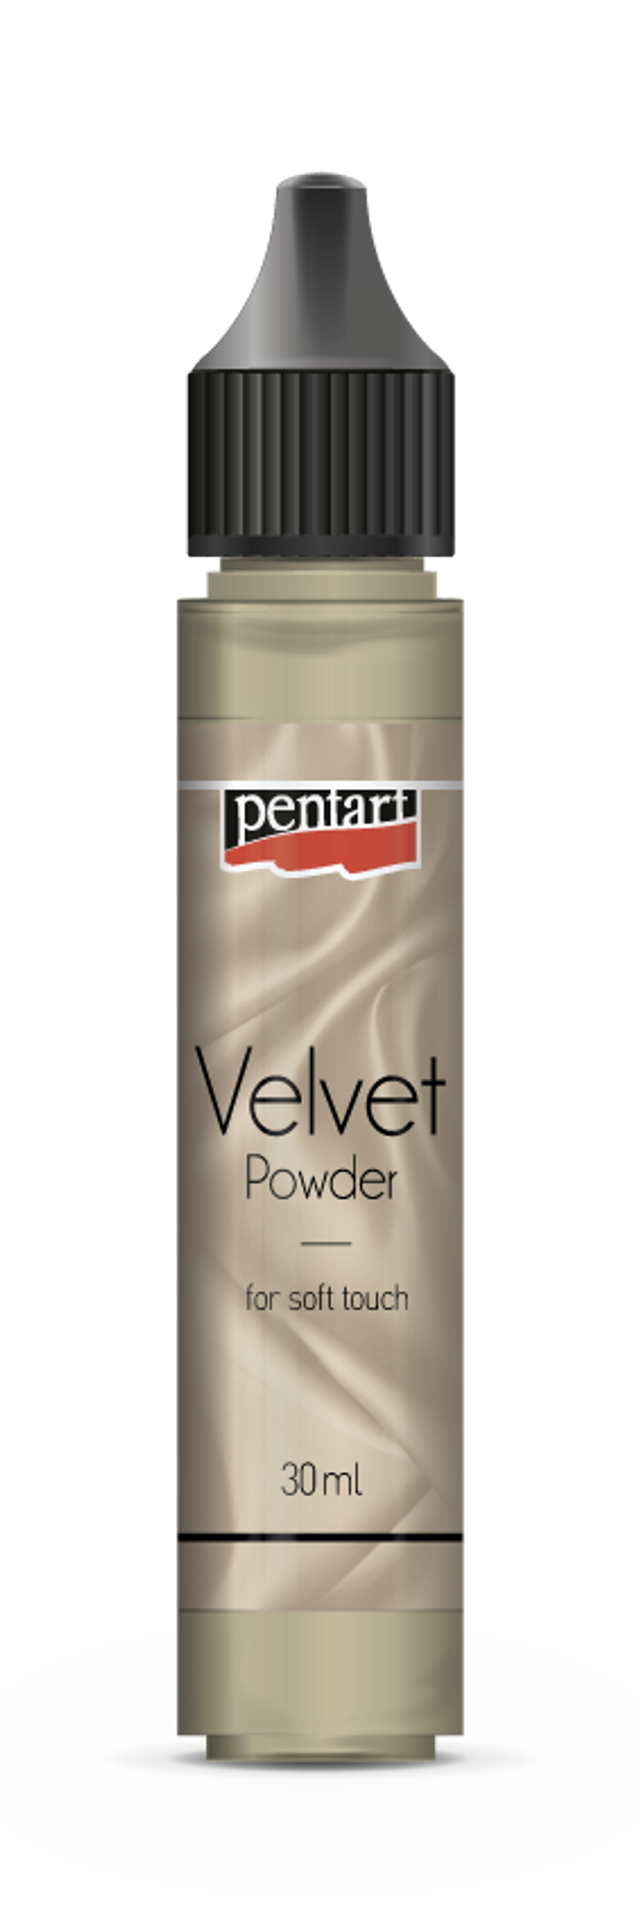 Pentart Velvet Powder Pen - Decoupage Queen